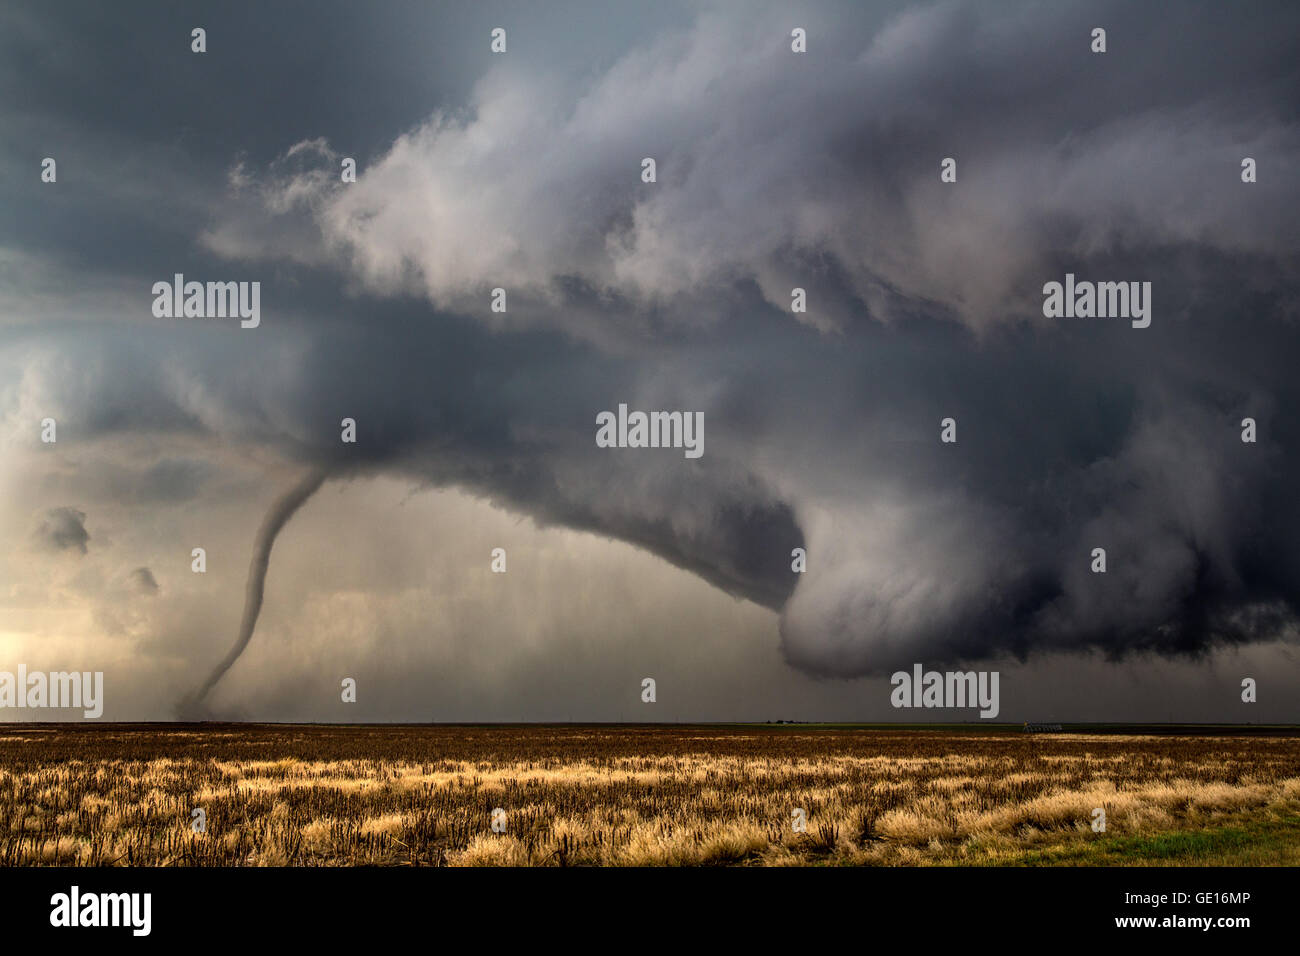 Un tornado desciende de un supercell cerca de Dodge City, Kansas, 24 de mayo de 2016. Este fue uno de los 15 tornados tornados esta tormenta producida. Foto de stock